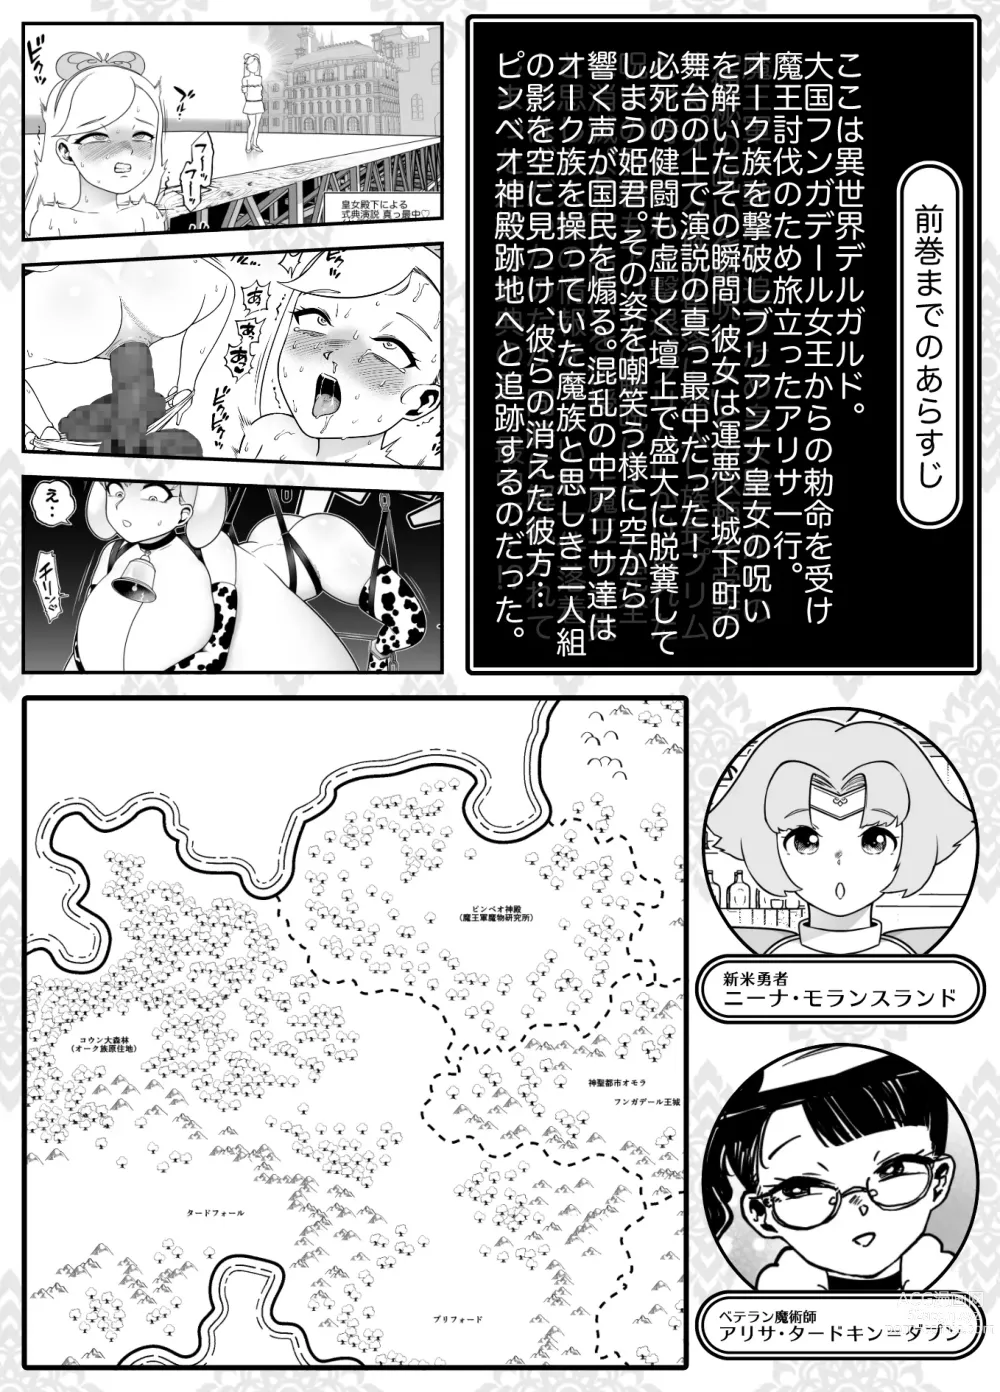 Page 2 of doujinshi Kaiben Manyuutan Unmorasu IV